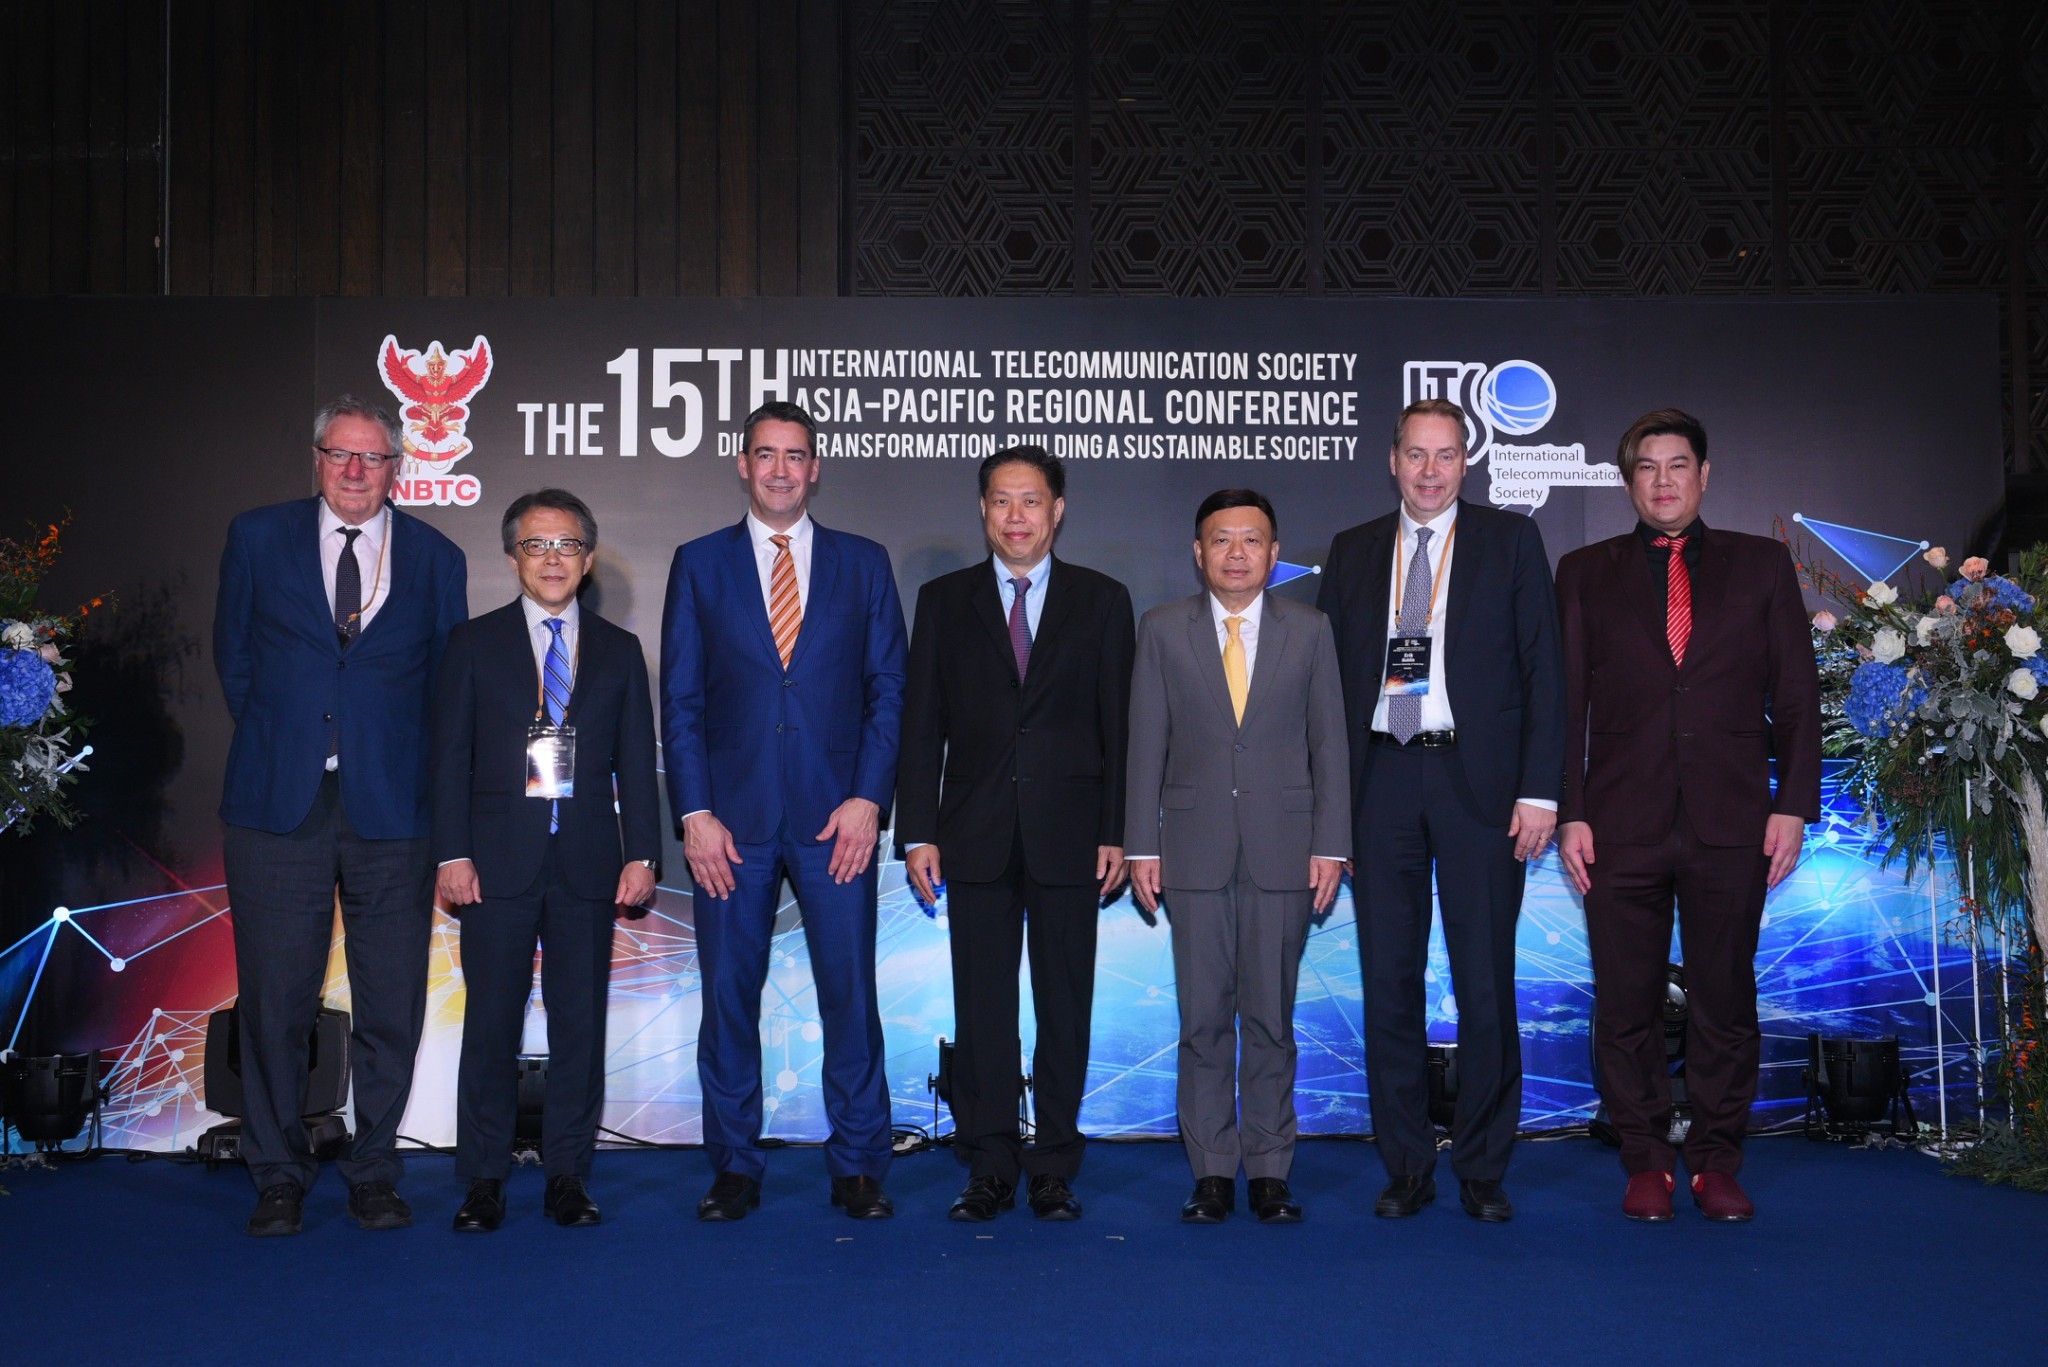 การประชุมเชิงวิชาการ The 15th International Telecommunication Society, Asia-Pacific Regional conference